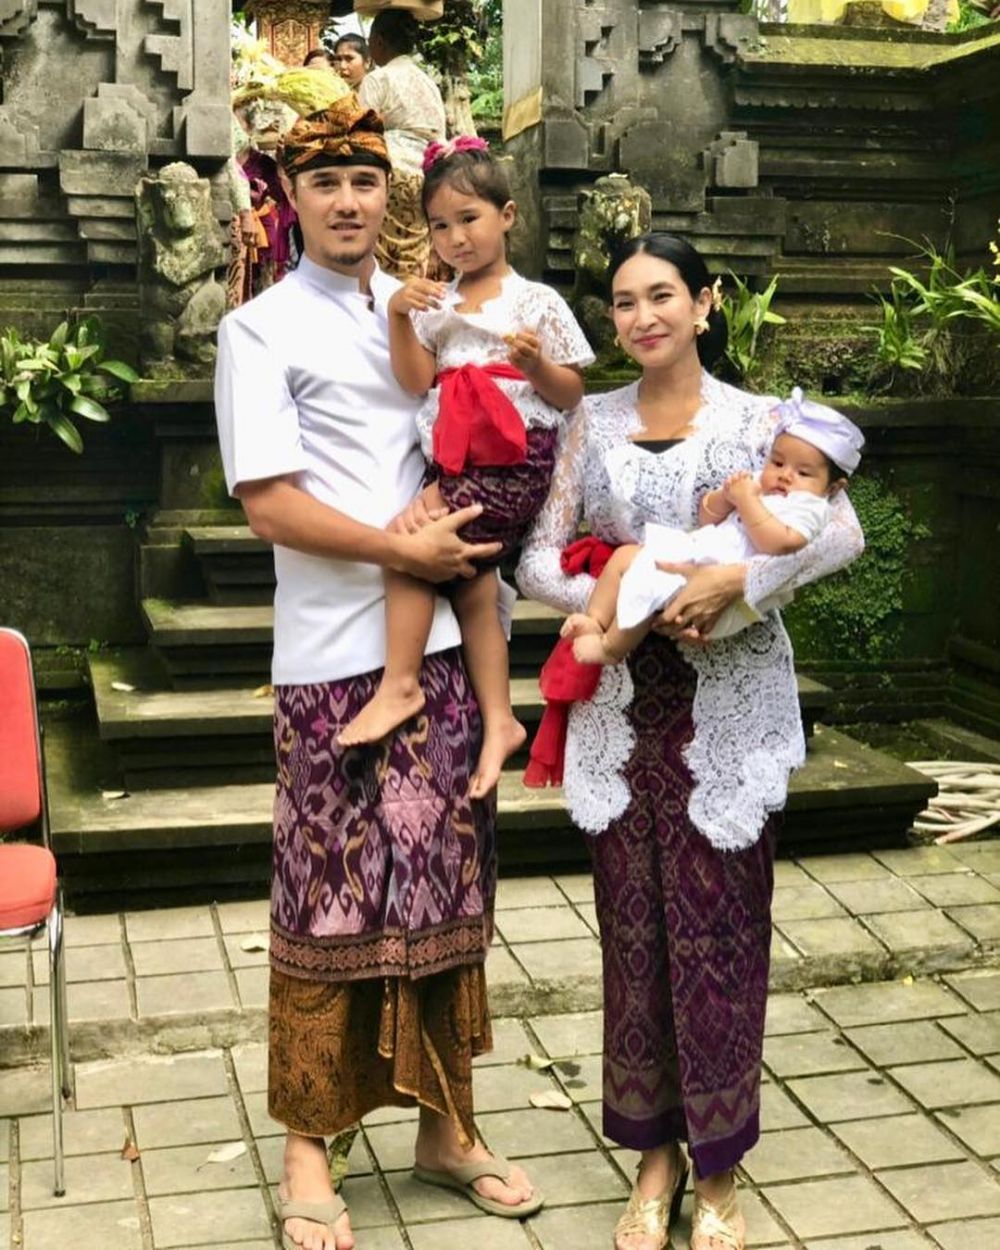 Fenomena Pernikahan Beda Kasta di Bali & Perawan Tua, Diskriminasikah?